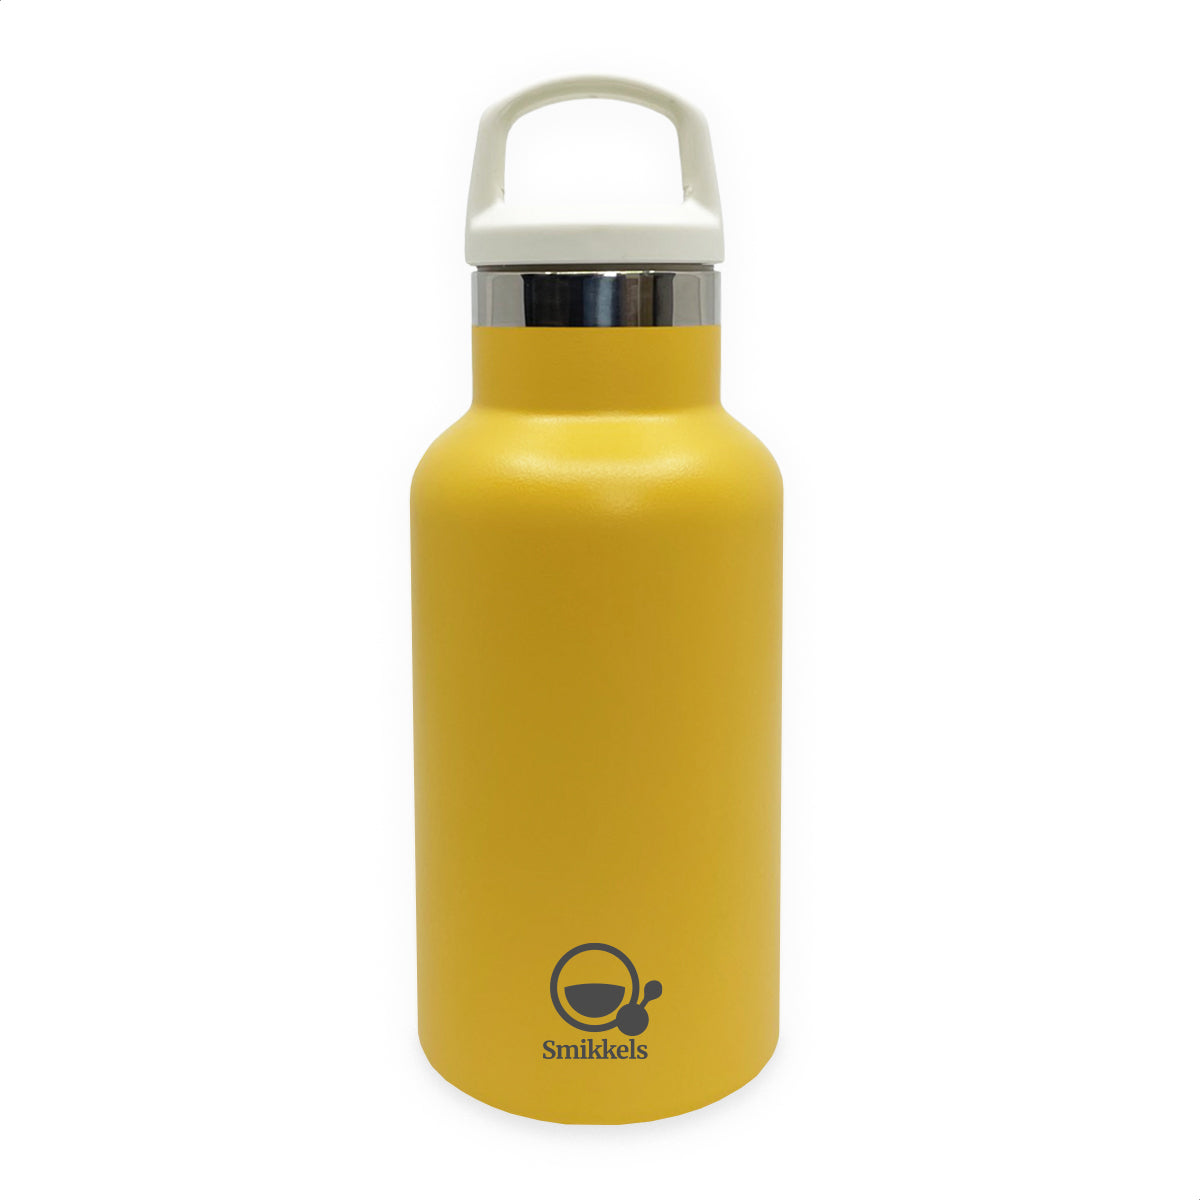 Smikkels - RVS thermo bottle 350 ml - yellow